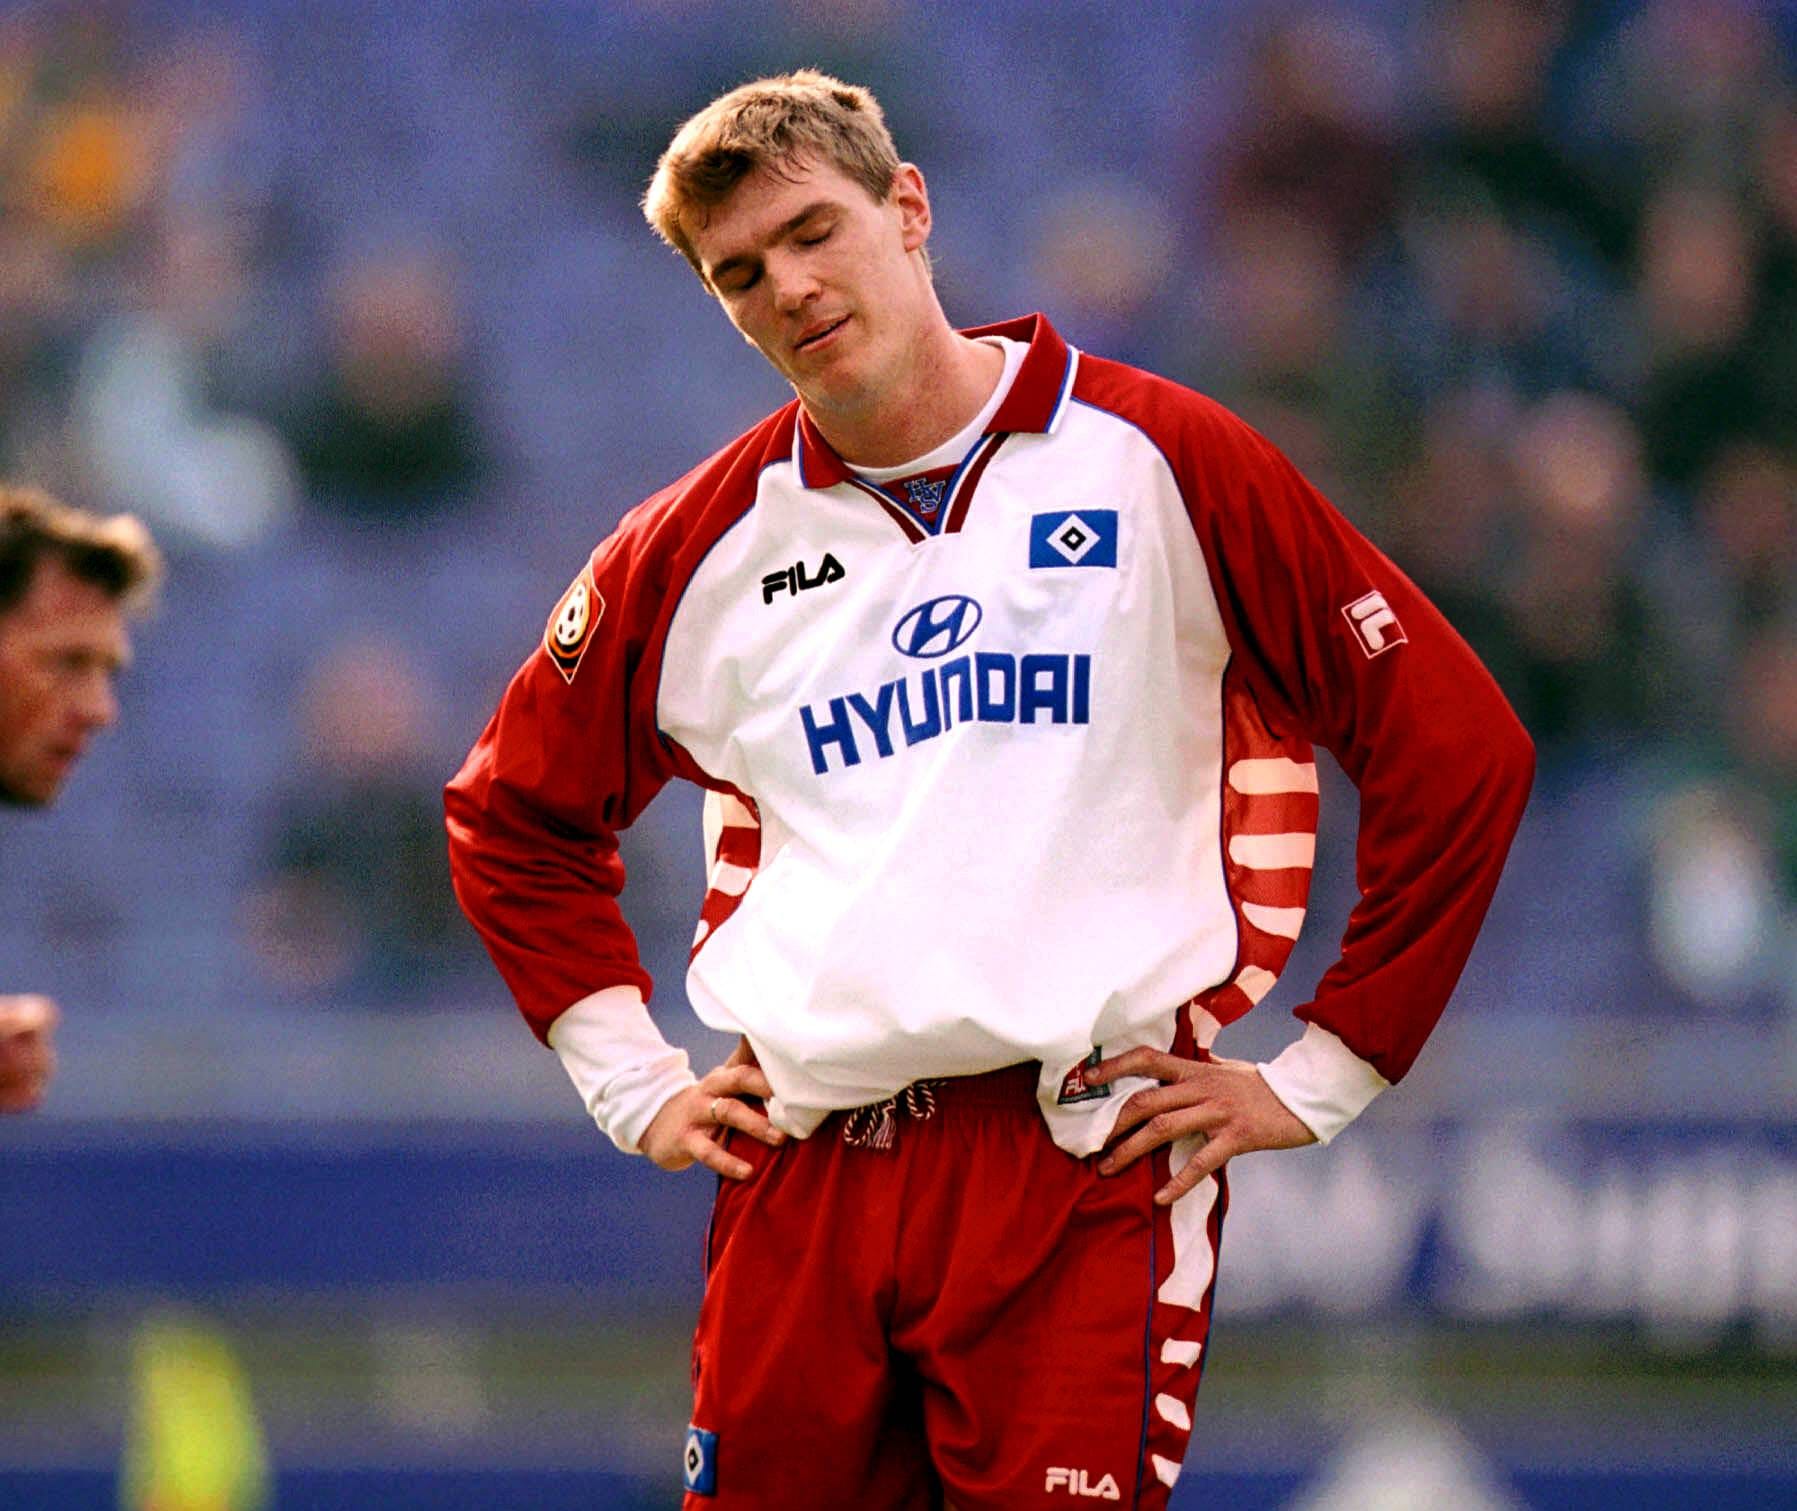 Karsten Bäron (1992-1996): Der ehemalige Fußballspieler musste 2001 nach acht Operationen am Knie seine Karriere als Profi beenden und war danach als Jugendtrainer beim HSV aktiv. Das Arbeitsverhältnis endete schließlich im Jahr 2010. Danach ist es ruhig um "Air Bäron" geworden.